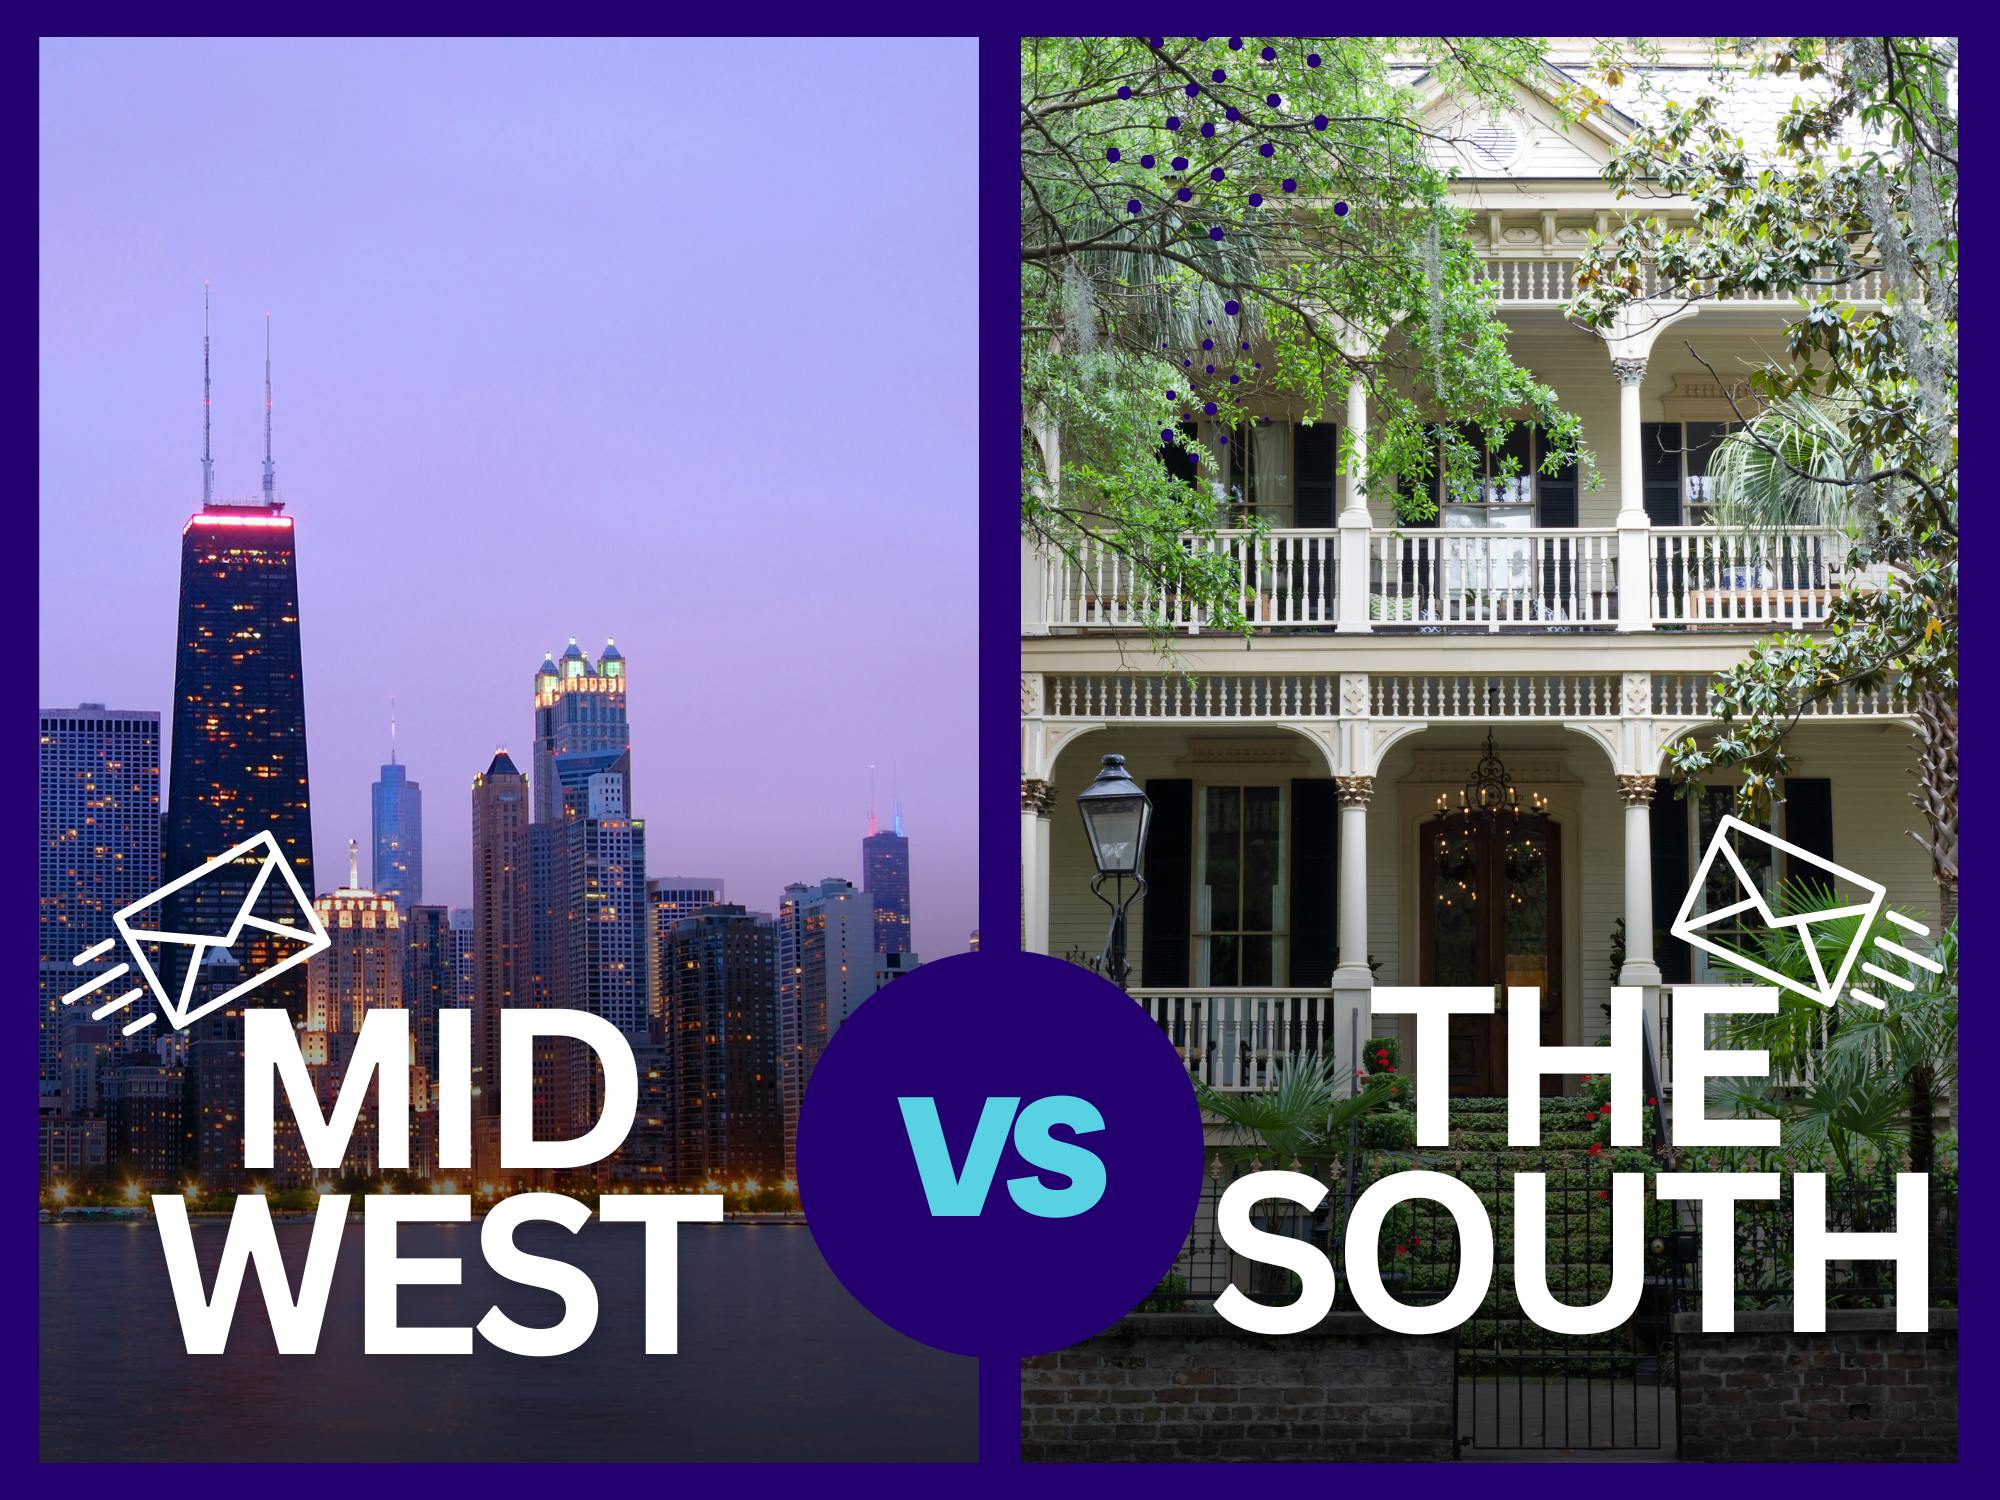 ai subject line showdown: Midwest vs. South